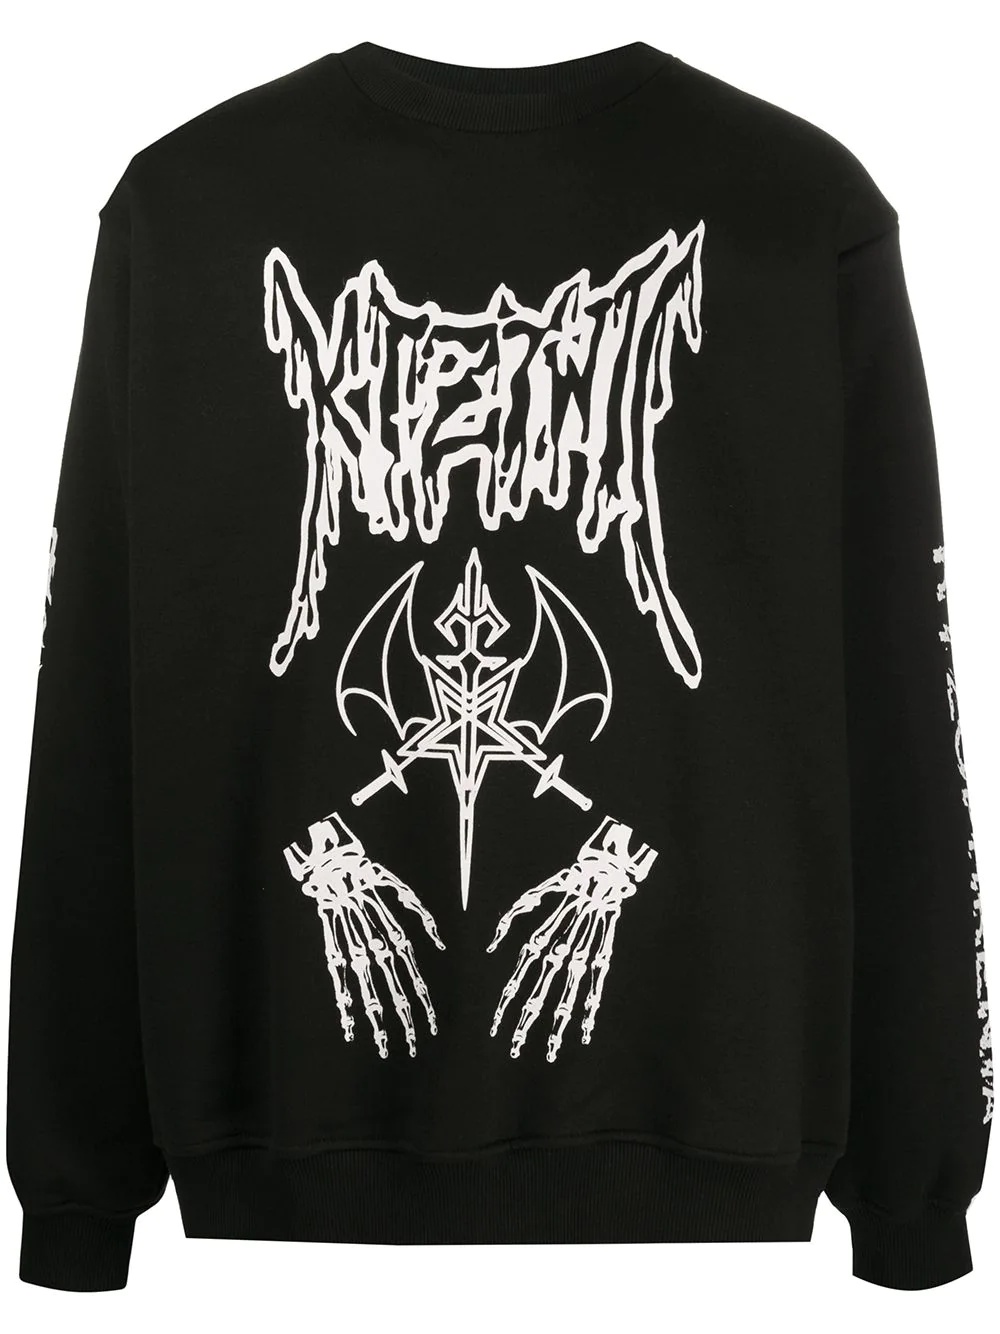 Dead Metal crew neck sweatshirt - 1